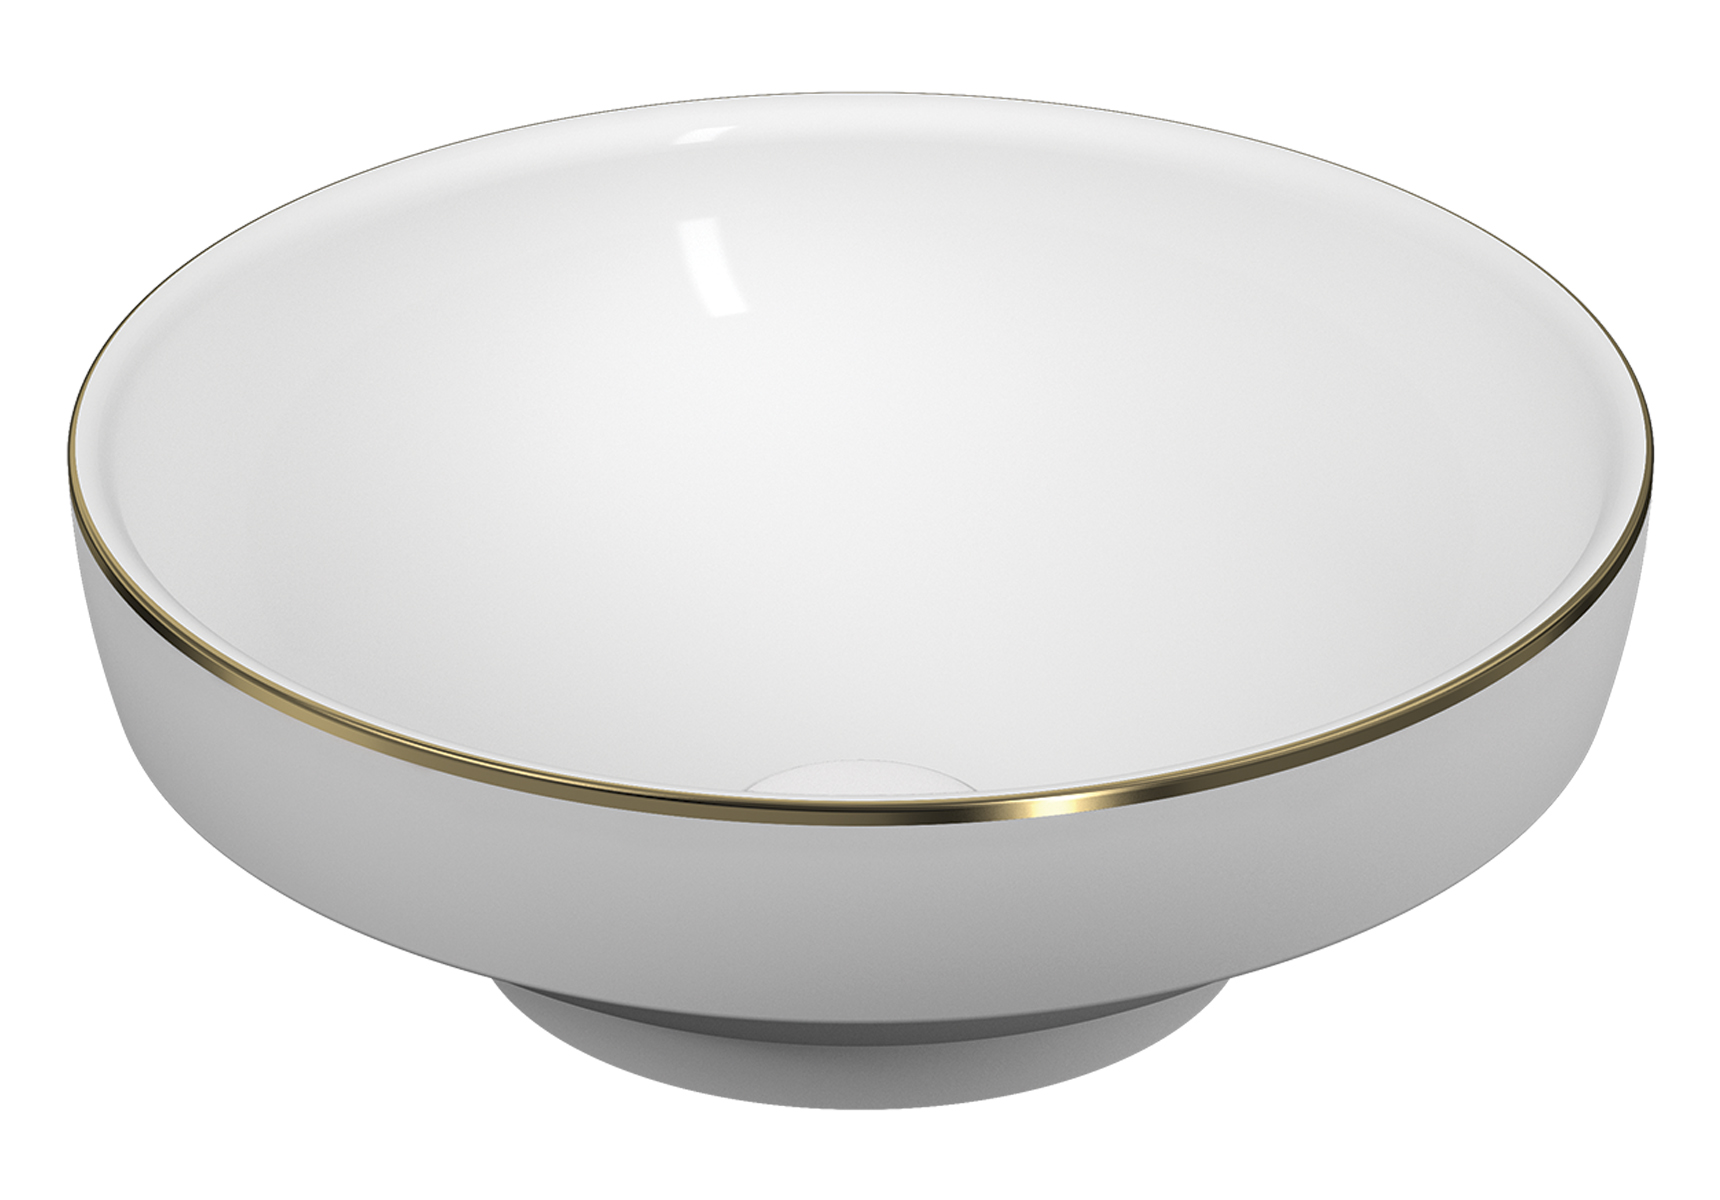 Water Jewels vasque à poser ou à encastrer, 40 cm, ronde, blanc haute brillanceavec liseret or